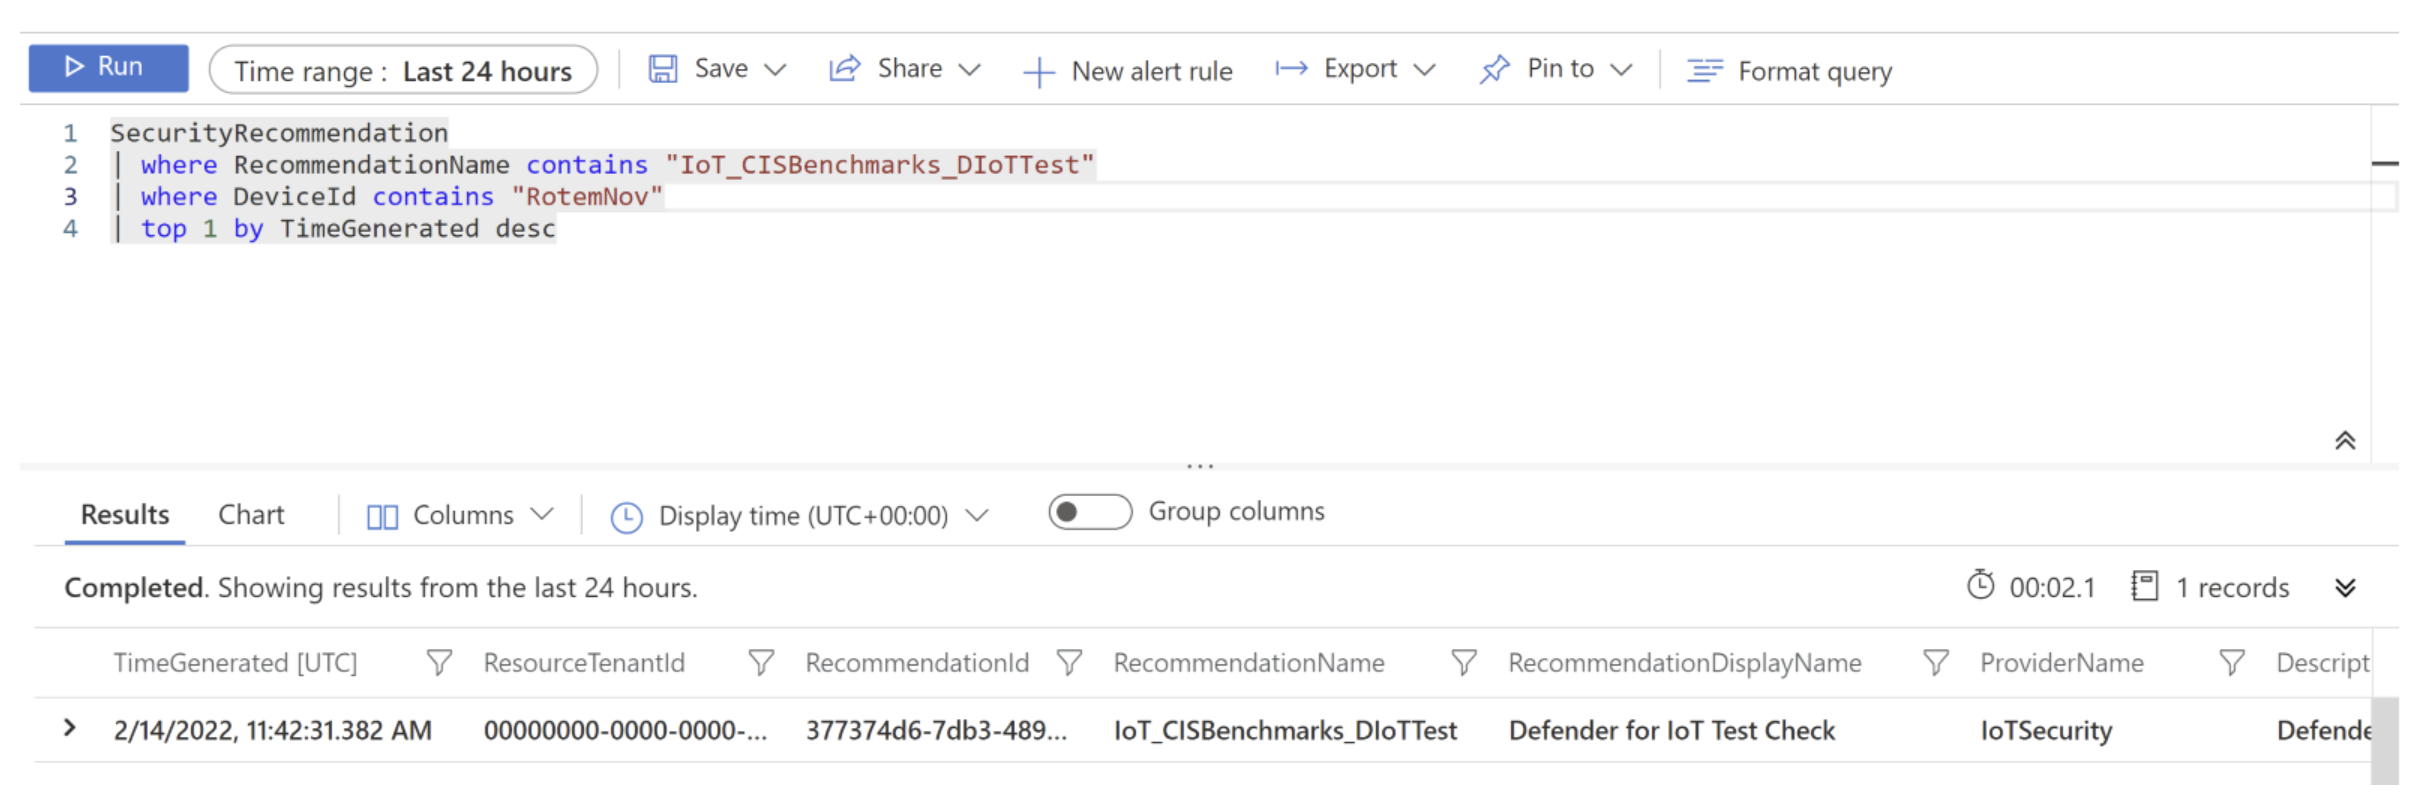 Captura de tela da execução da consulta IoT_CISBenchmarks_DIoTTest no Log Analytics.